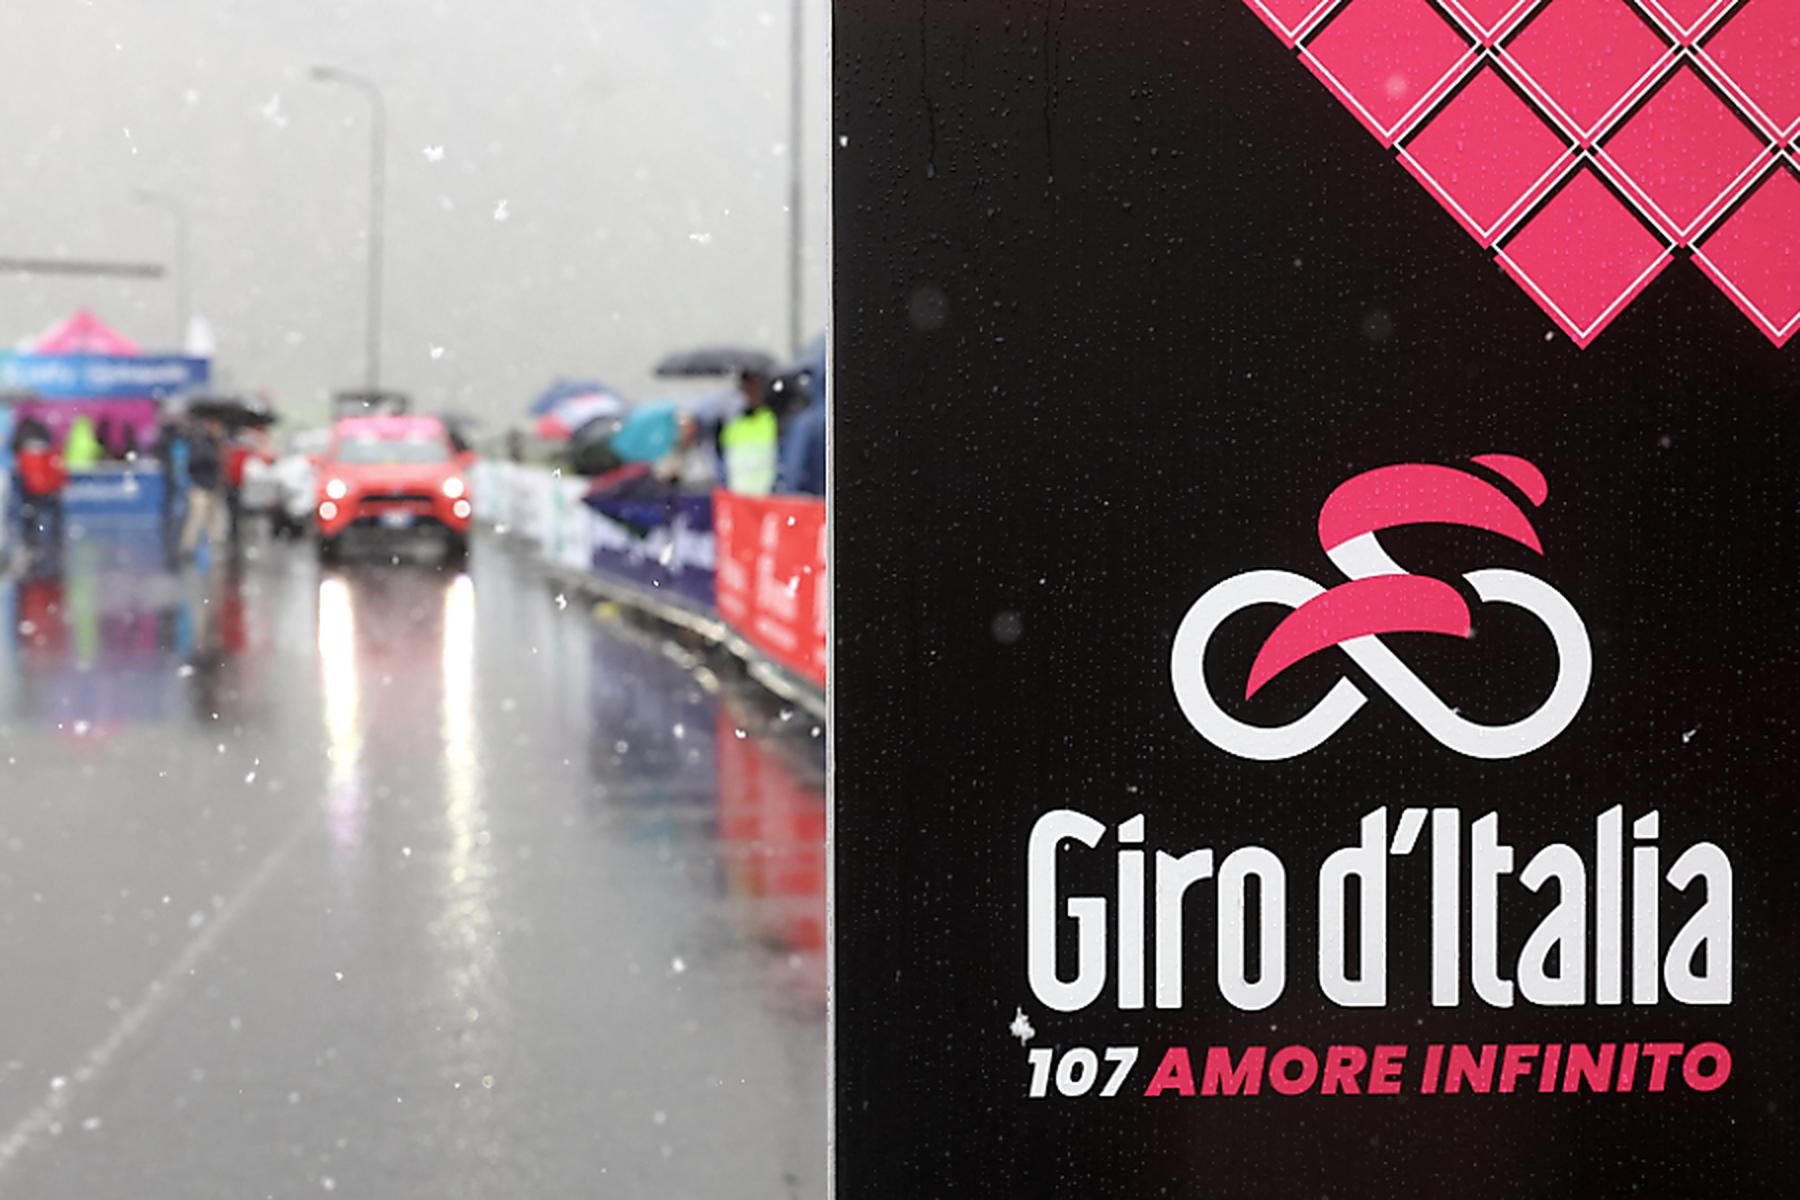 Livigno: Streckenänderung wegen schlechtem Wetter beim Giro